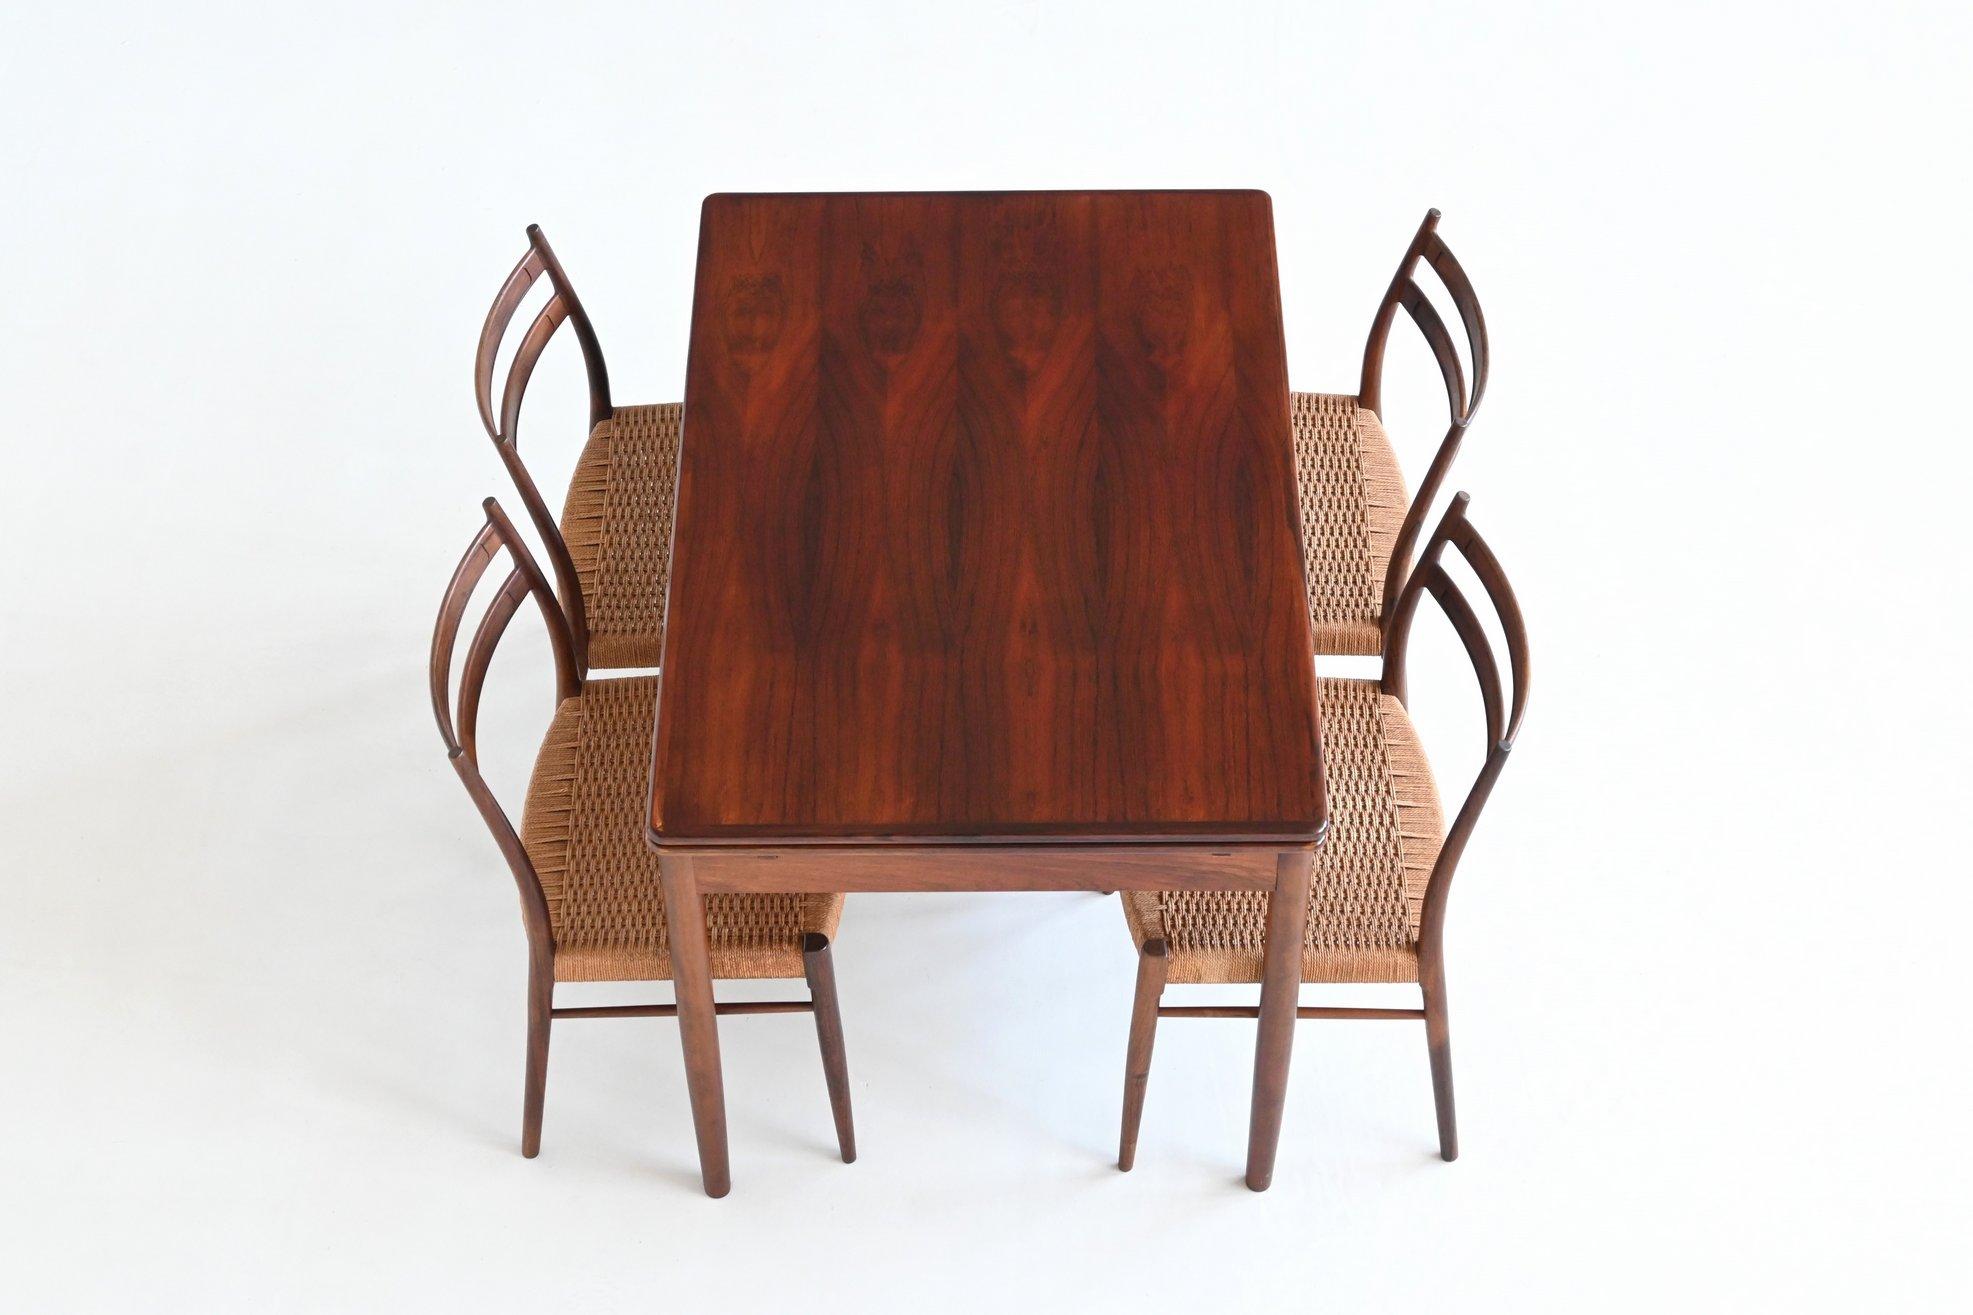 Magnifique table de salle à manger extensible en bois dur d'un designer ou fabricant inconnu, Danemark 1960. Cette table de bonne facture est fabriquée en bois dur chaud et magnifiquement veiné. Les pieds coniques sont en bois dur massif et peuvent